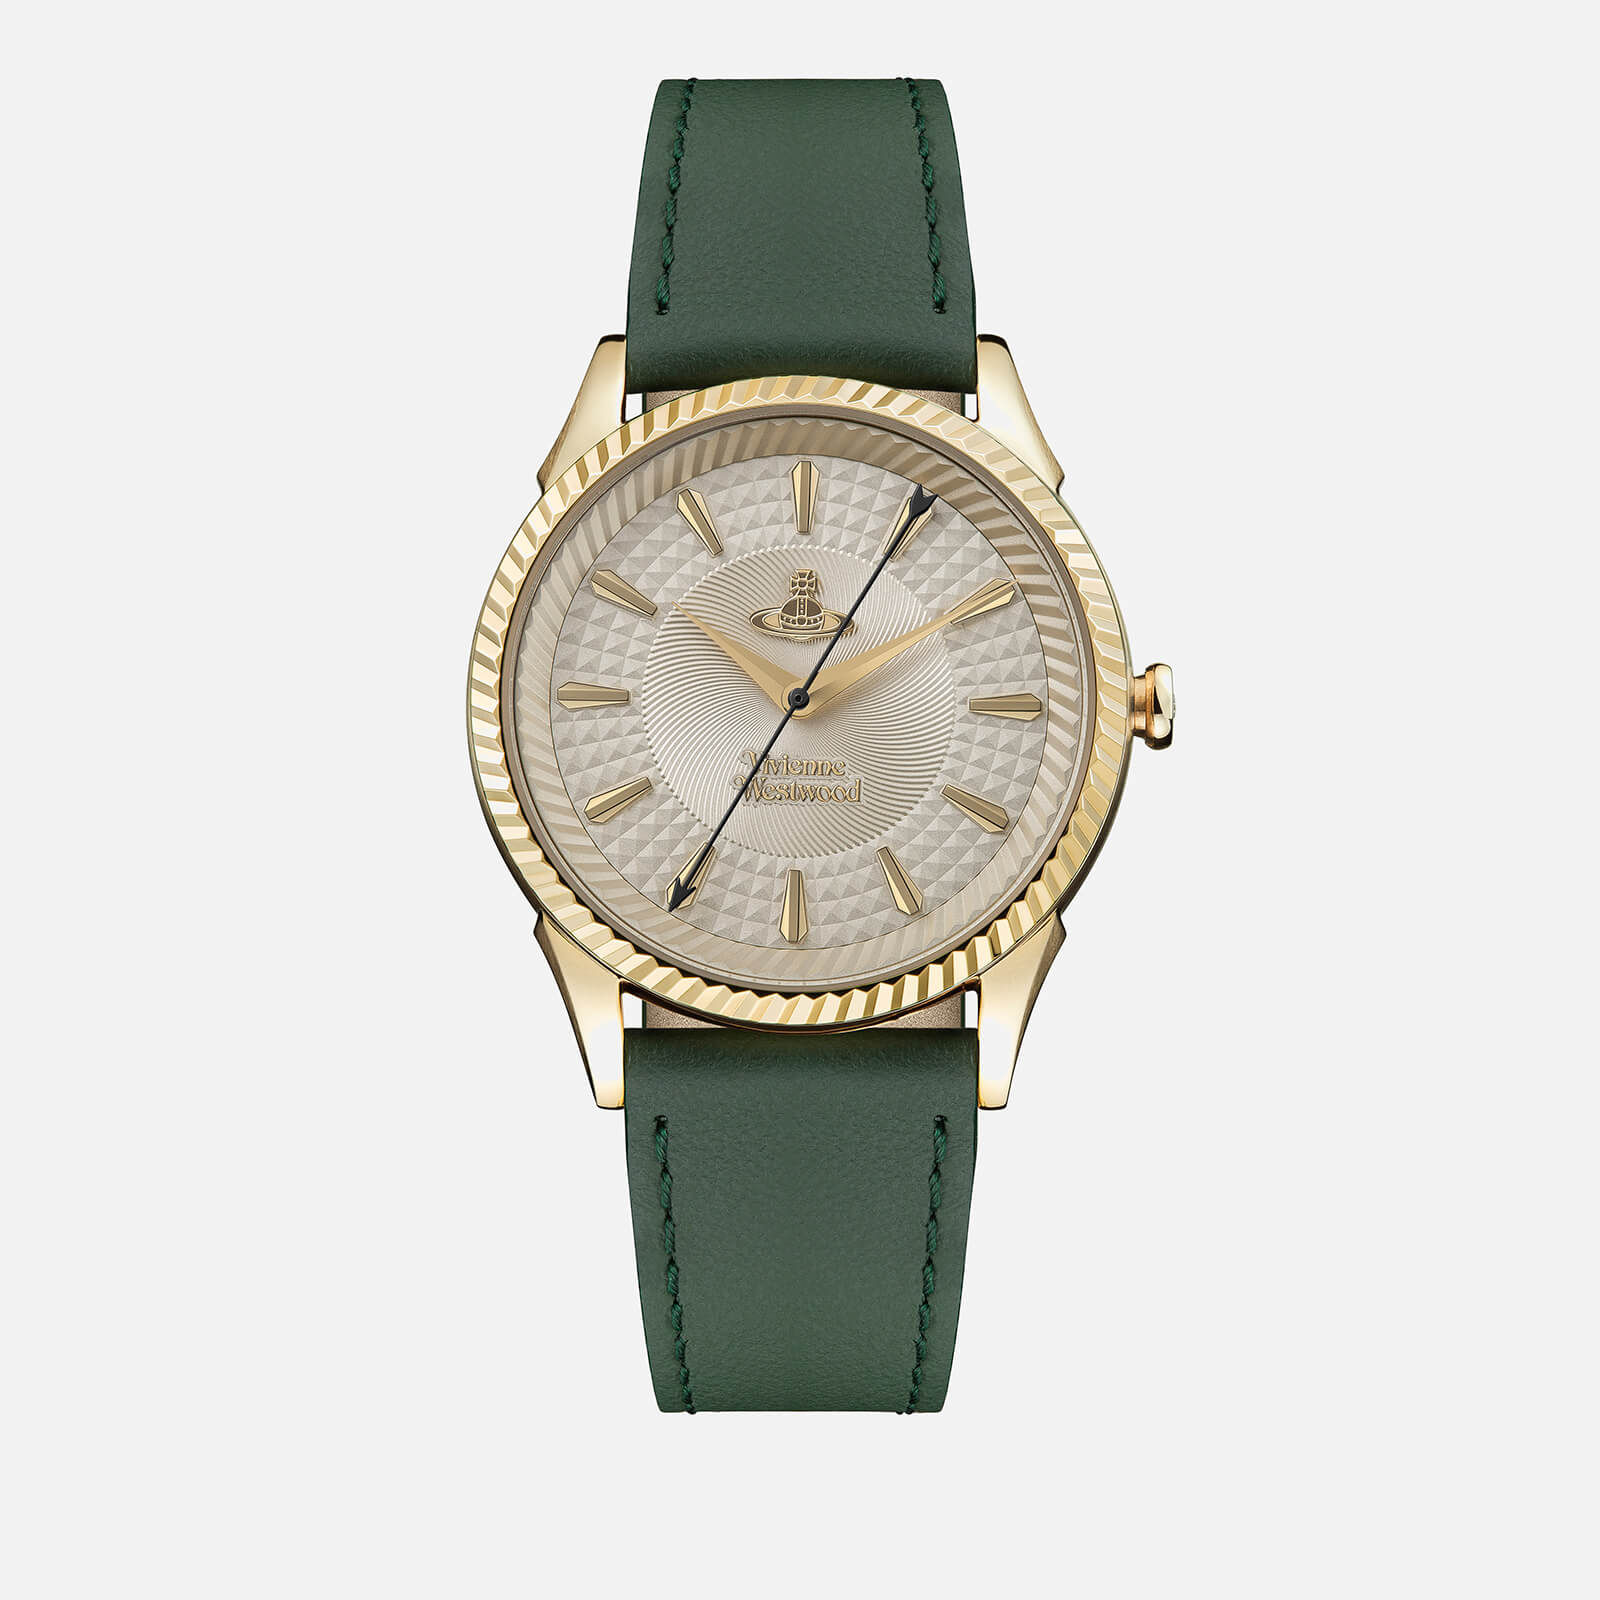 Vivienne Westwood Women's Seymour Watch - Green